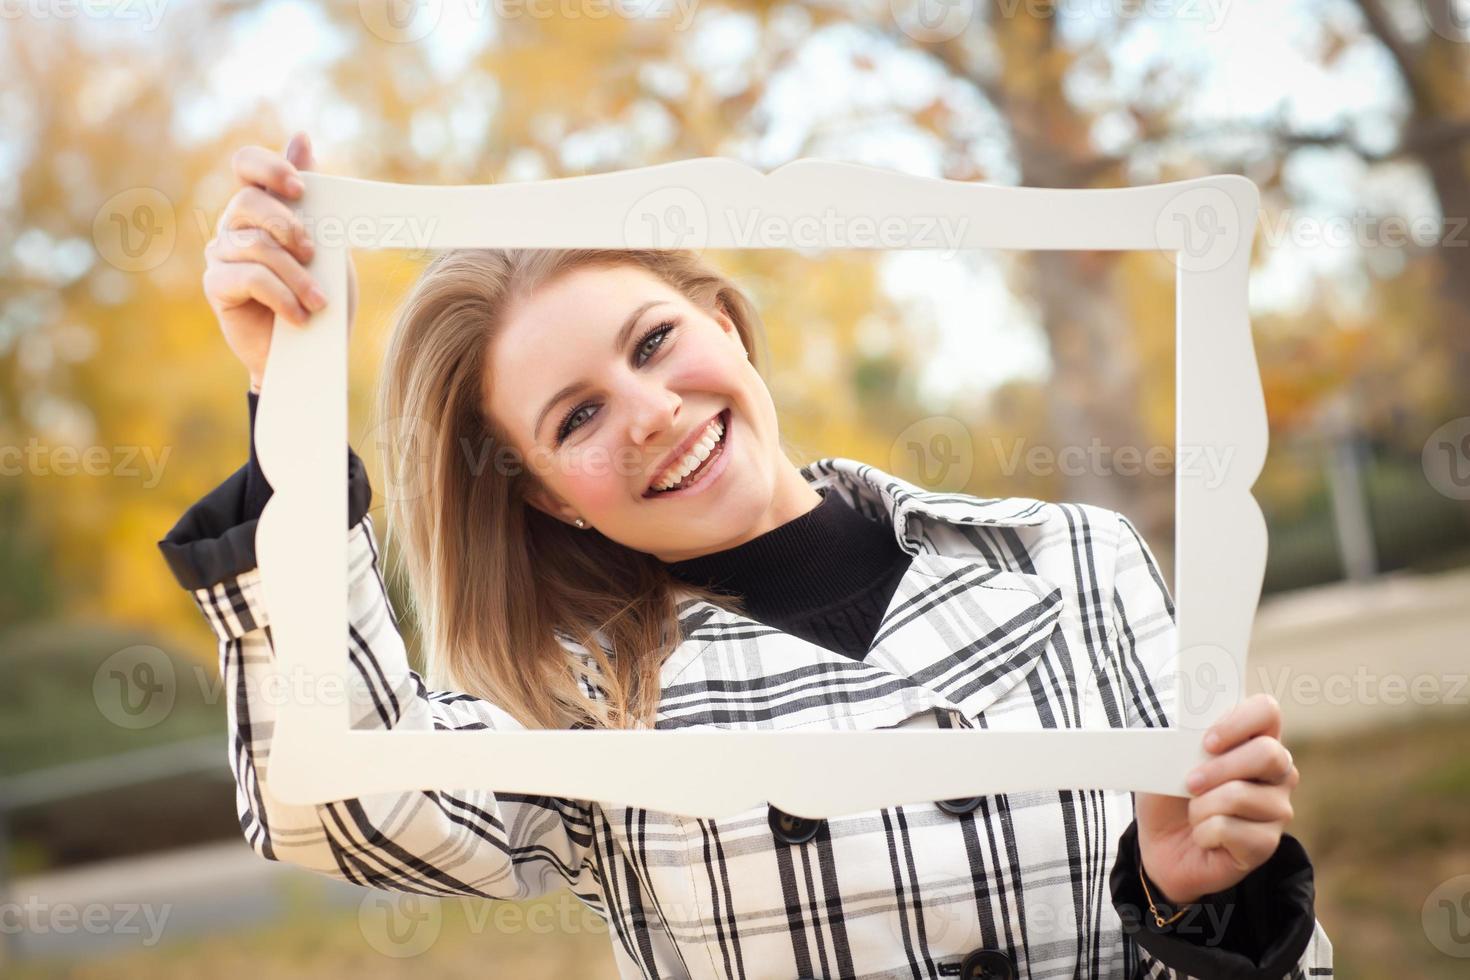 jolie jeune femme souriante dans le parc avec cadre photo